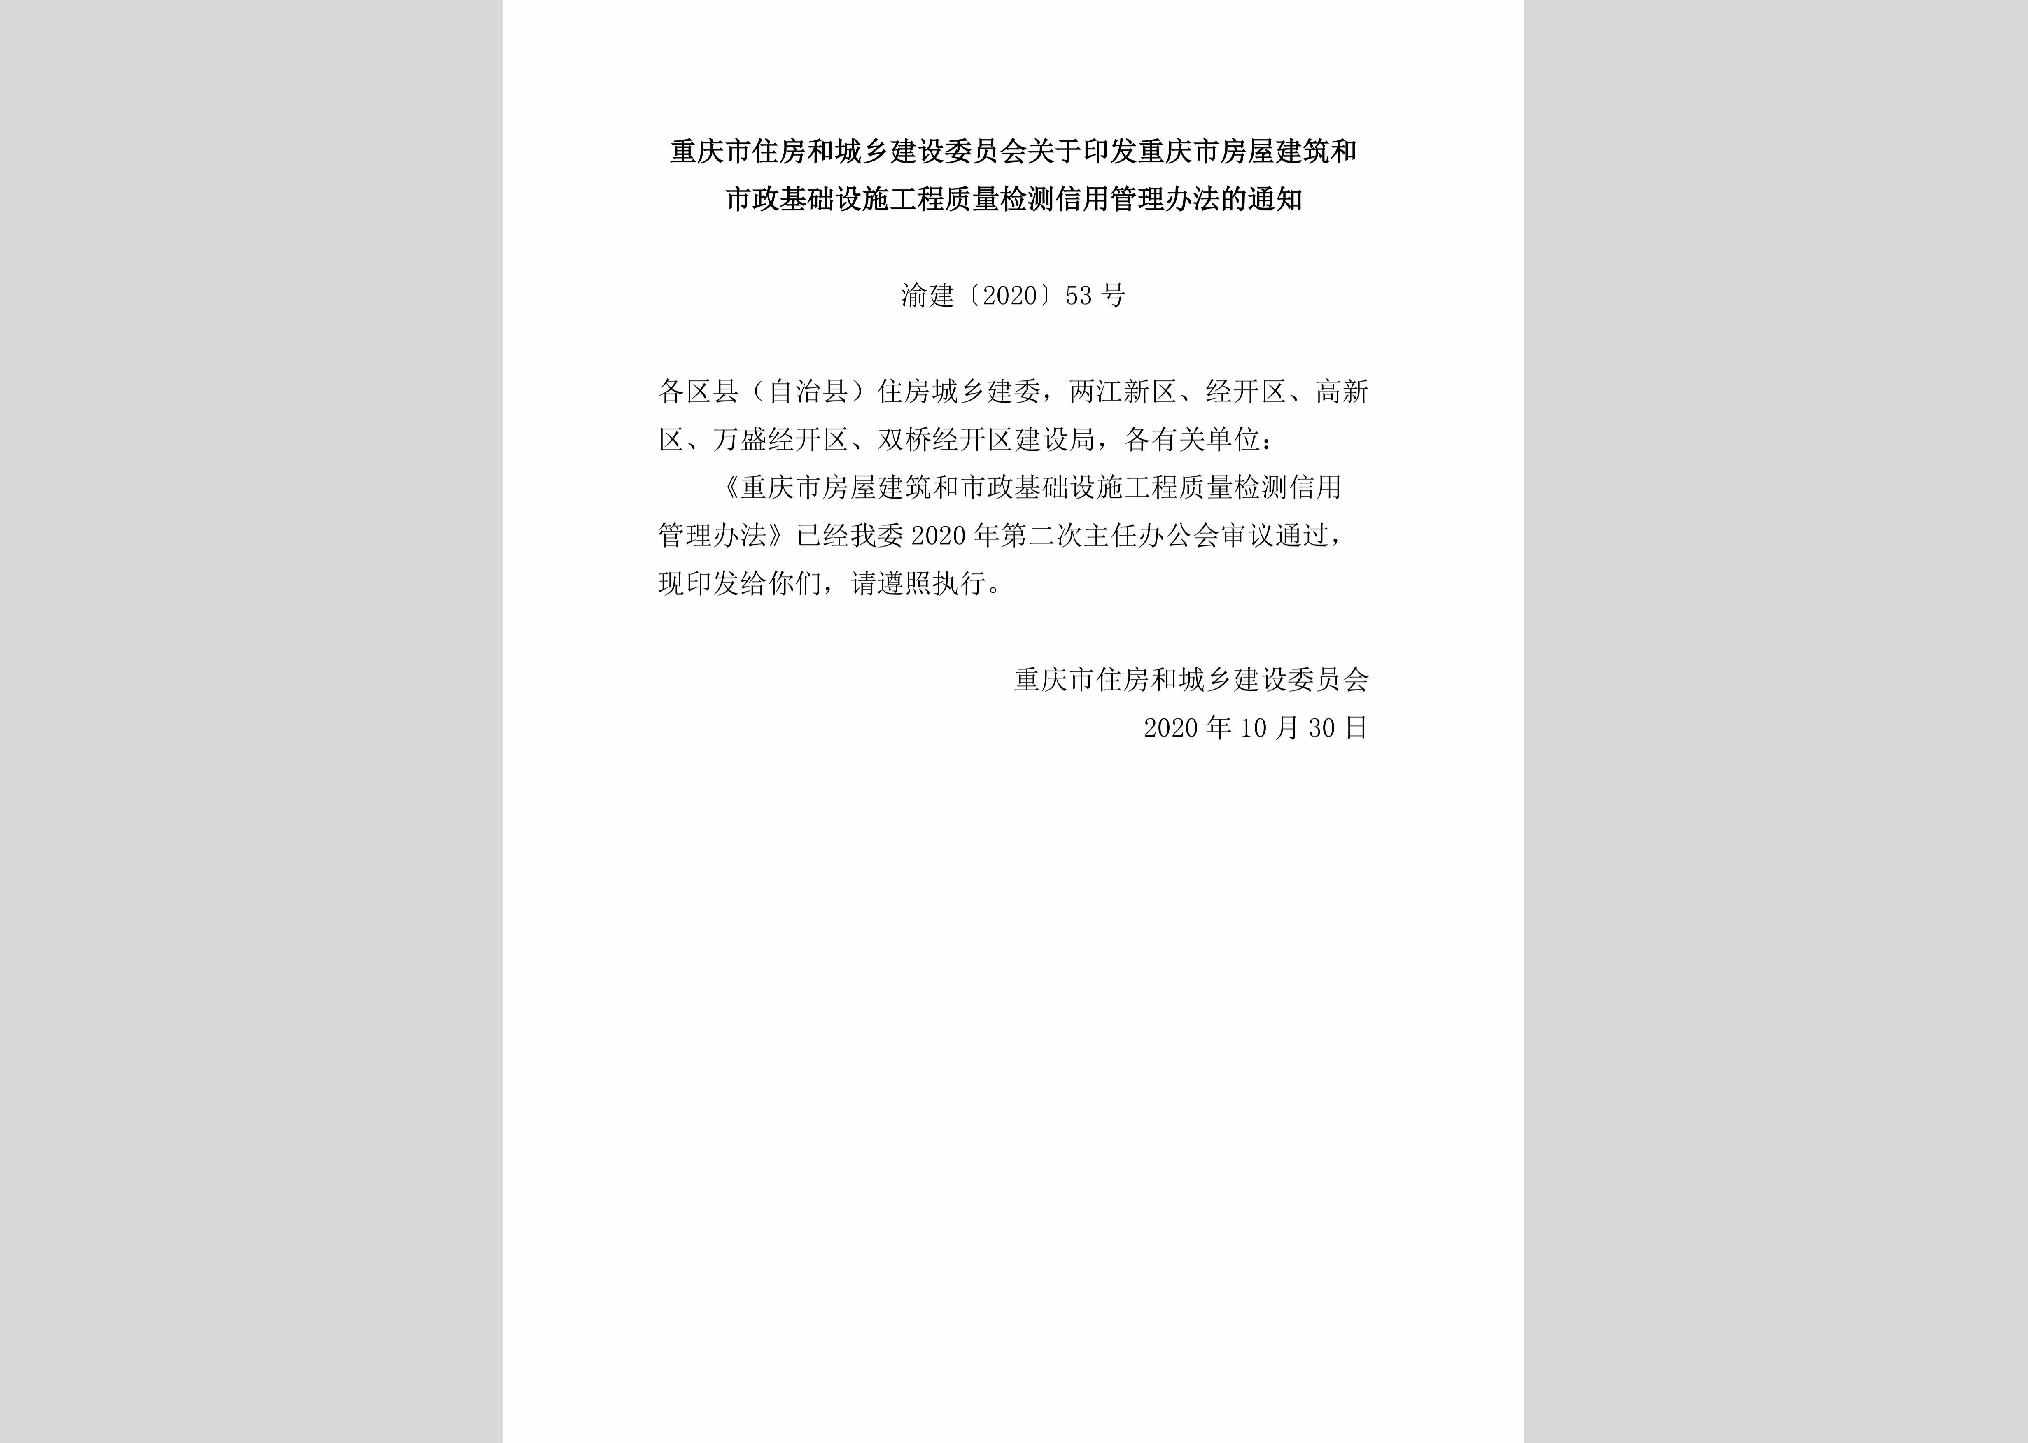 渝建[2020]53号：重庆市住房和城乡建设委员会关于印发重庆市房屋建筑和市政基础设施工程质量检测信用管理办法的通知